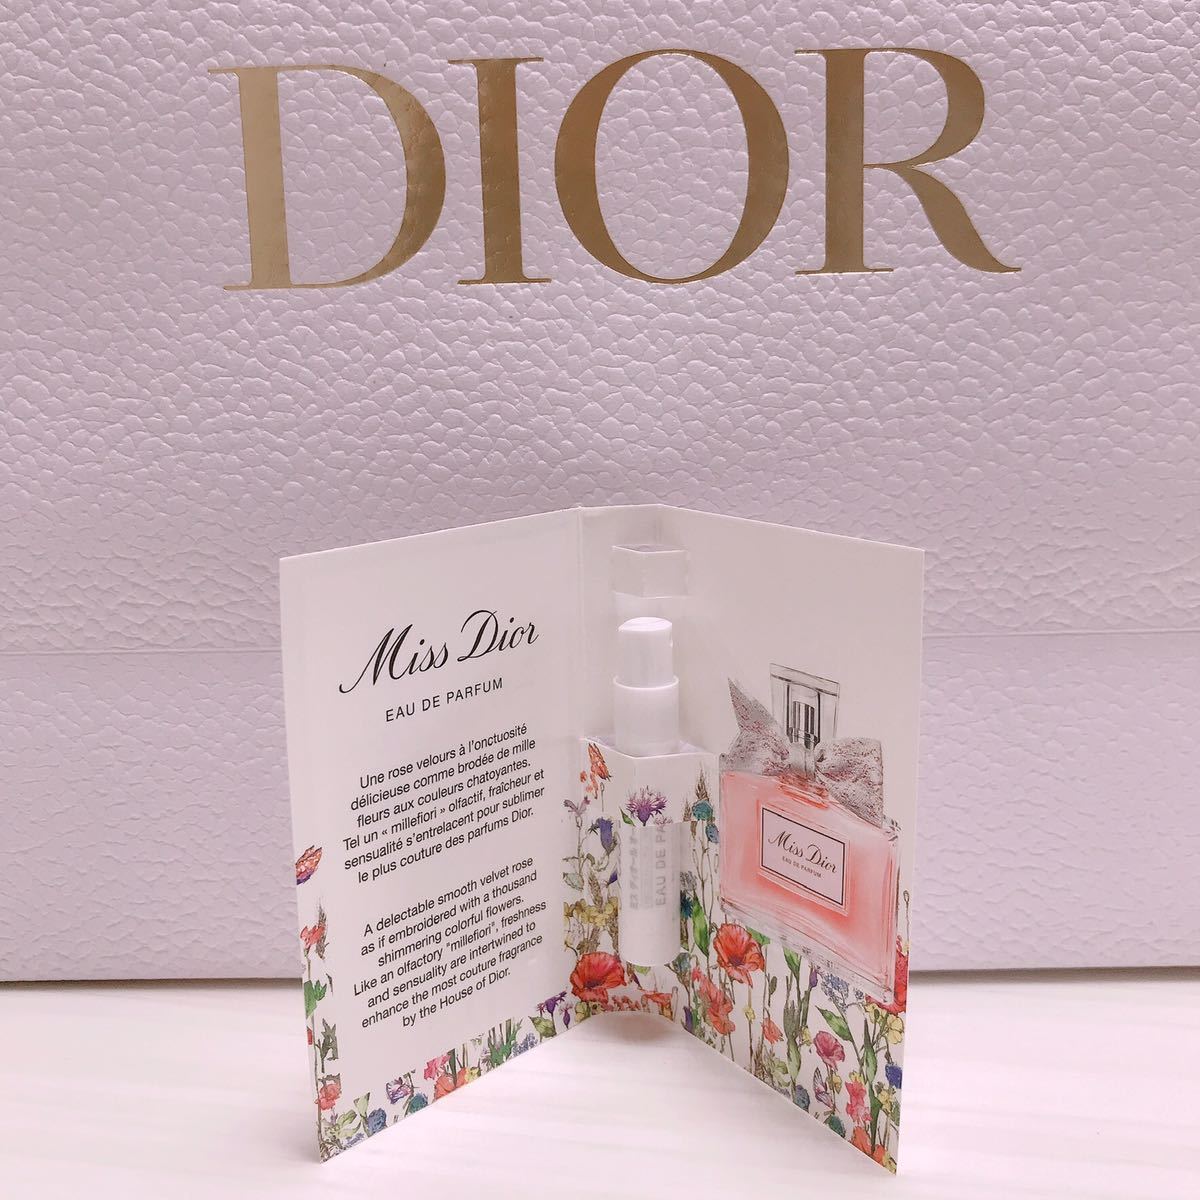 保障 Dior 試供品 macktiles.com